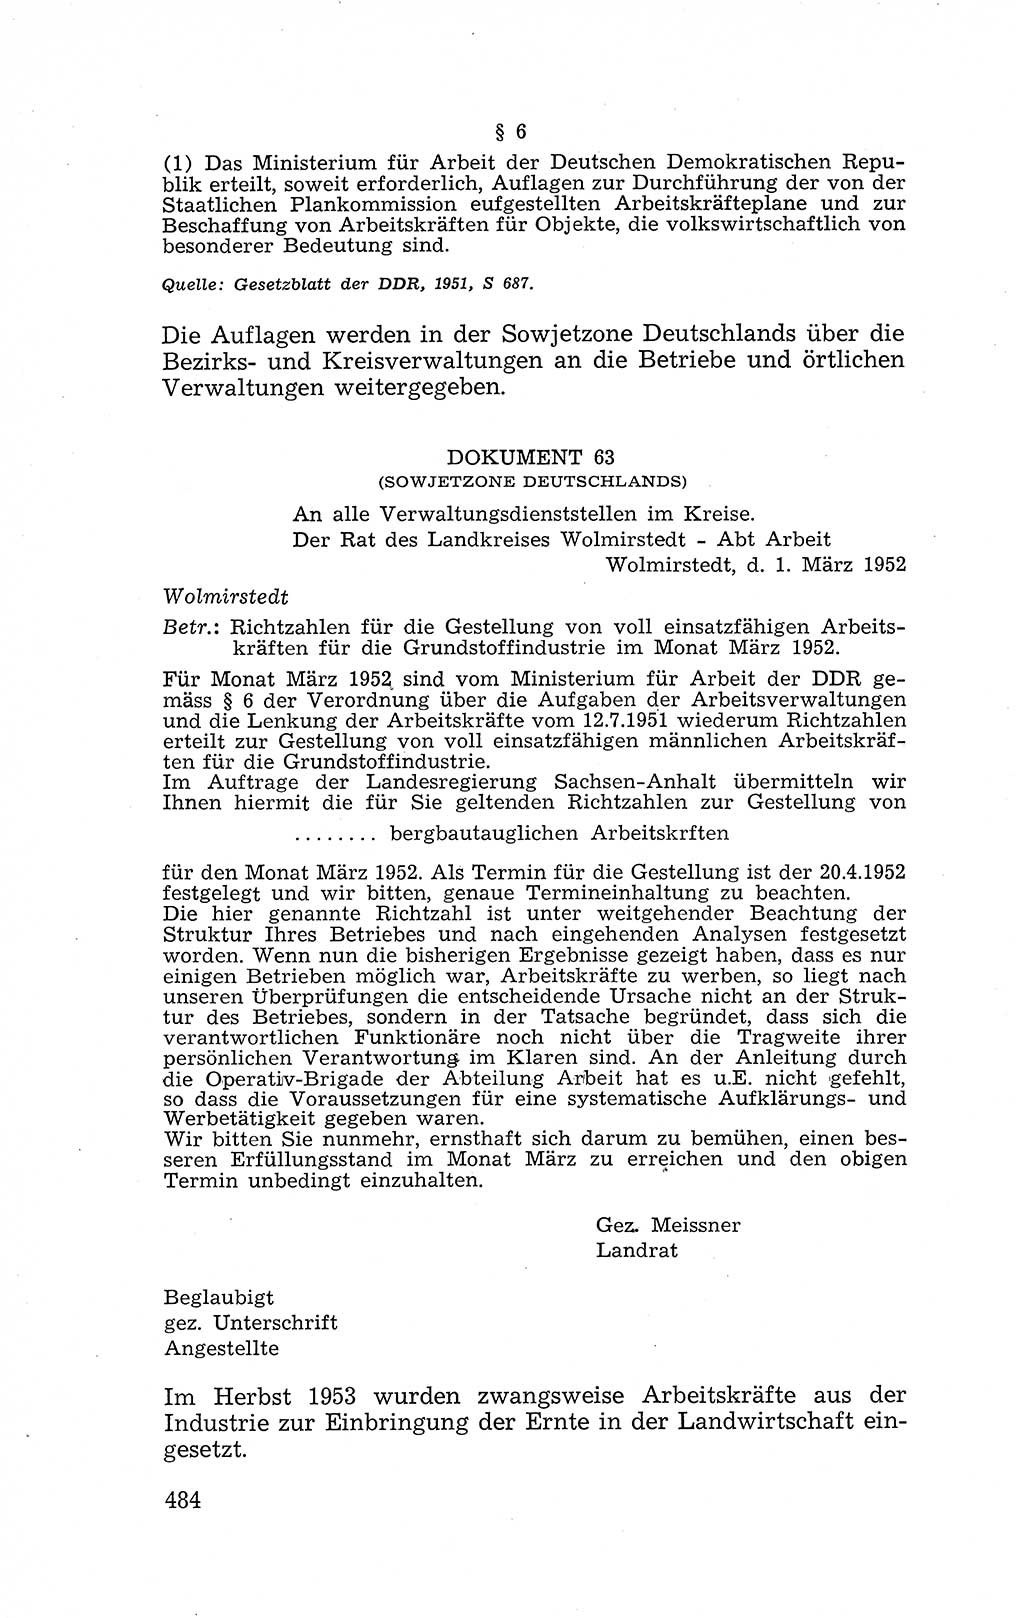 Recht in Fesseln, Dokumente, Internationale Juristen-Kommission [Bundesrepublik Deutschland (BRD)] 1955, Seite 484 (R. Dok. IJK BRD 1955, S. 484)